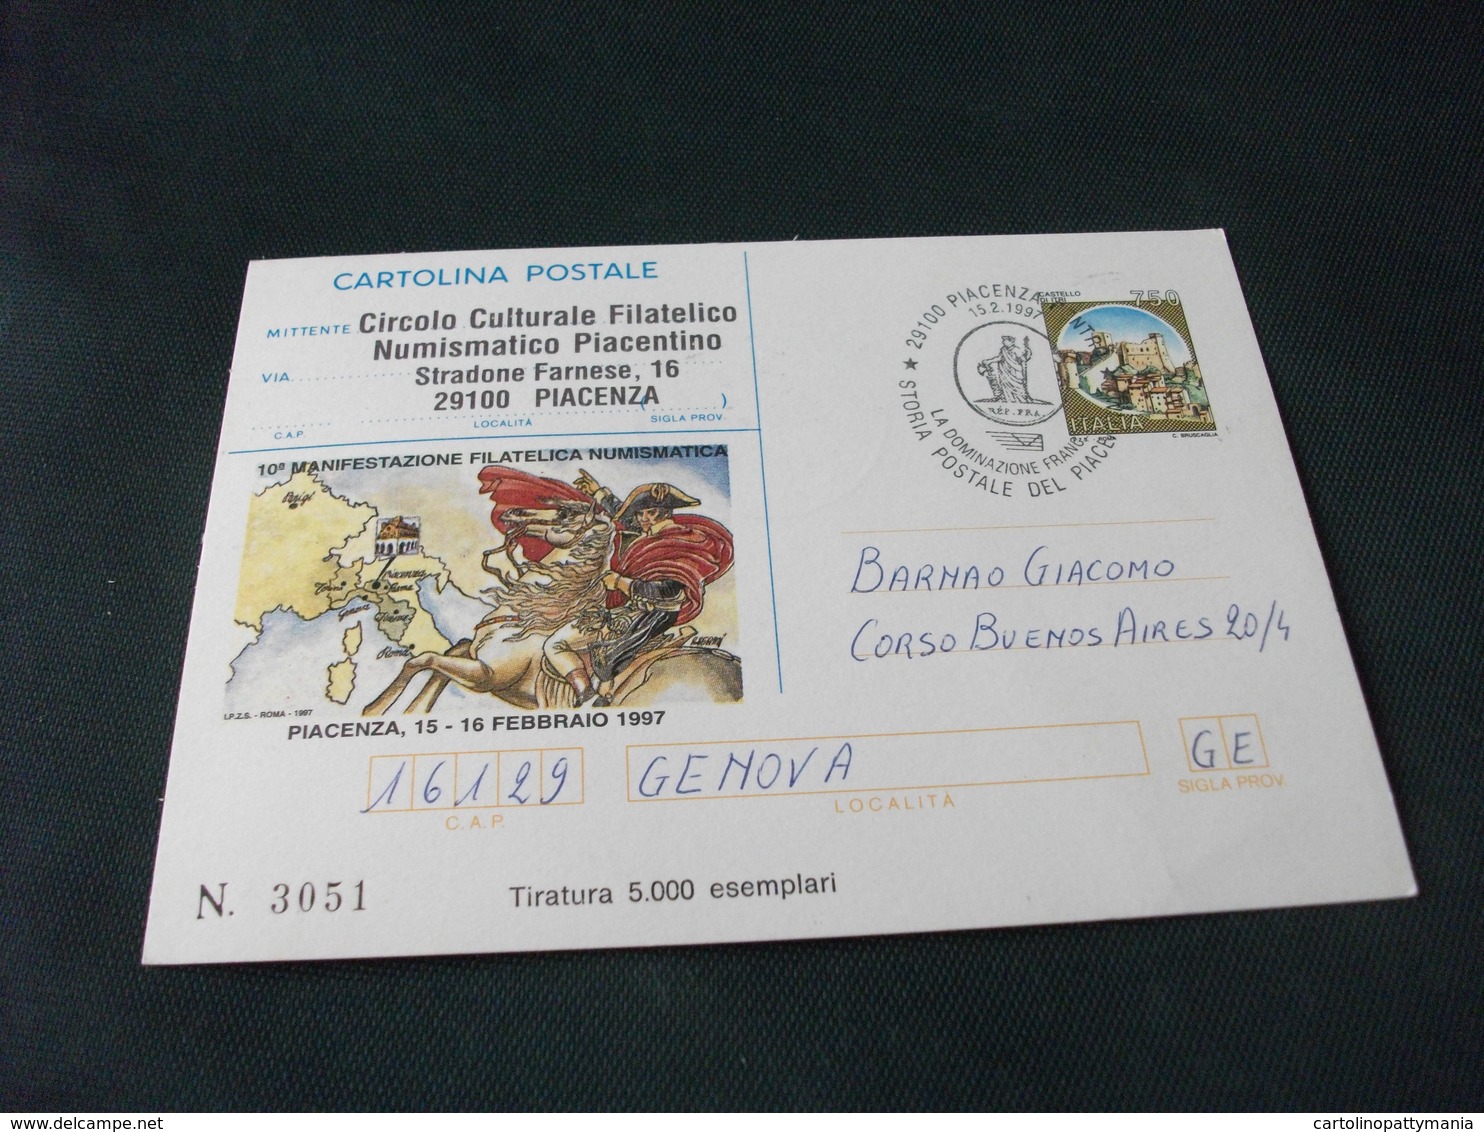 CARTOLINA POSTALE ITALIANA NAPOLEONE PIACENZA 1997 TIRATURA 5000 ESEMPLARI STORIA POSTALE - Uomini Politici E Militari